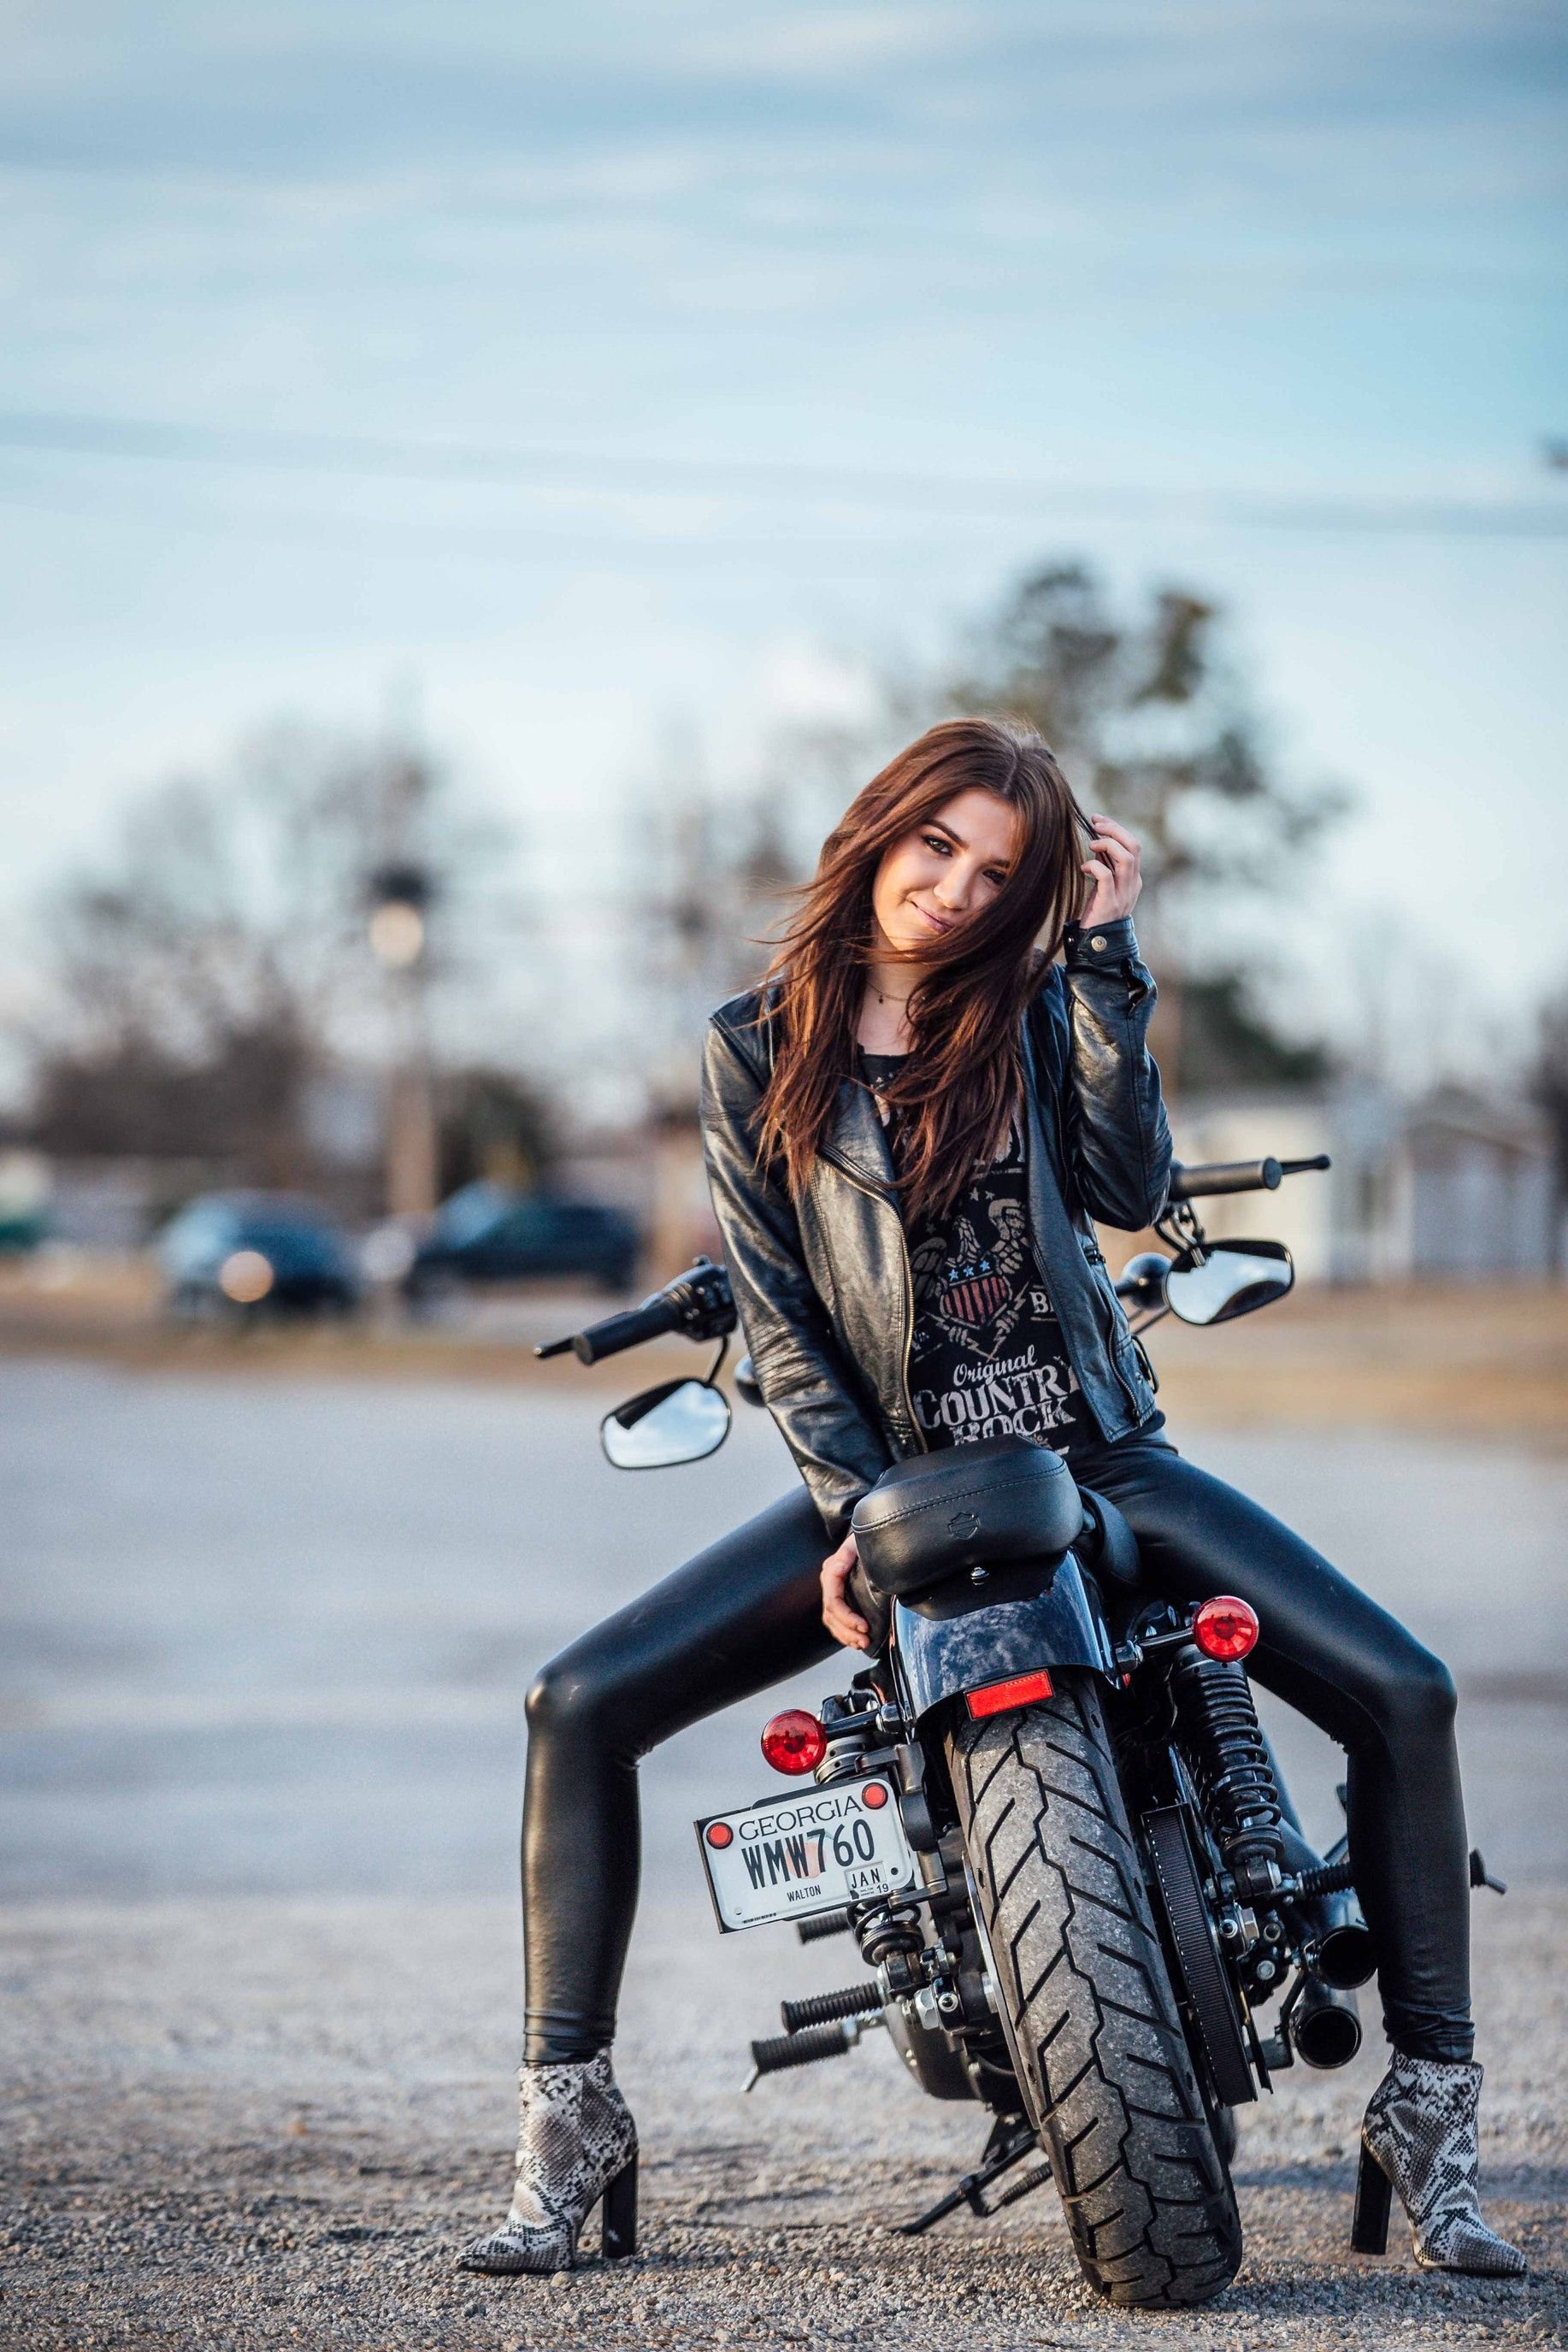 Про девушку на мотоцикле. Девушка на мотоцикле. Девушка байкер.